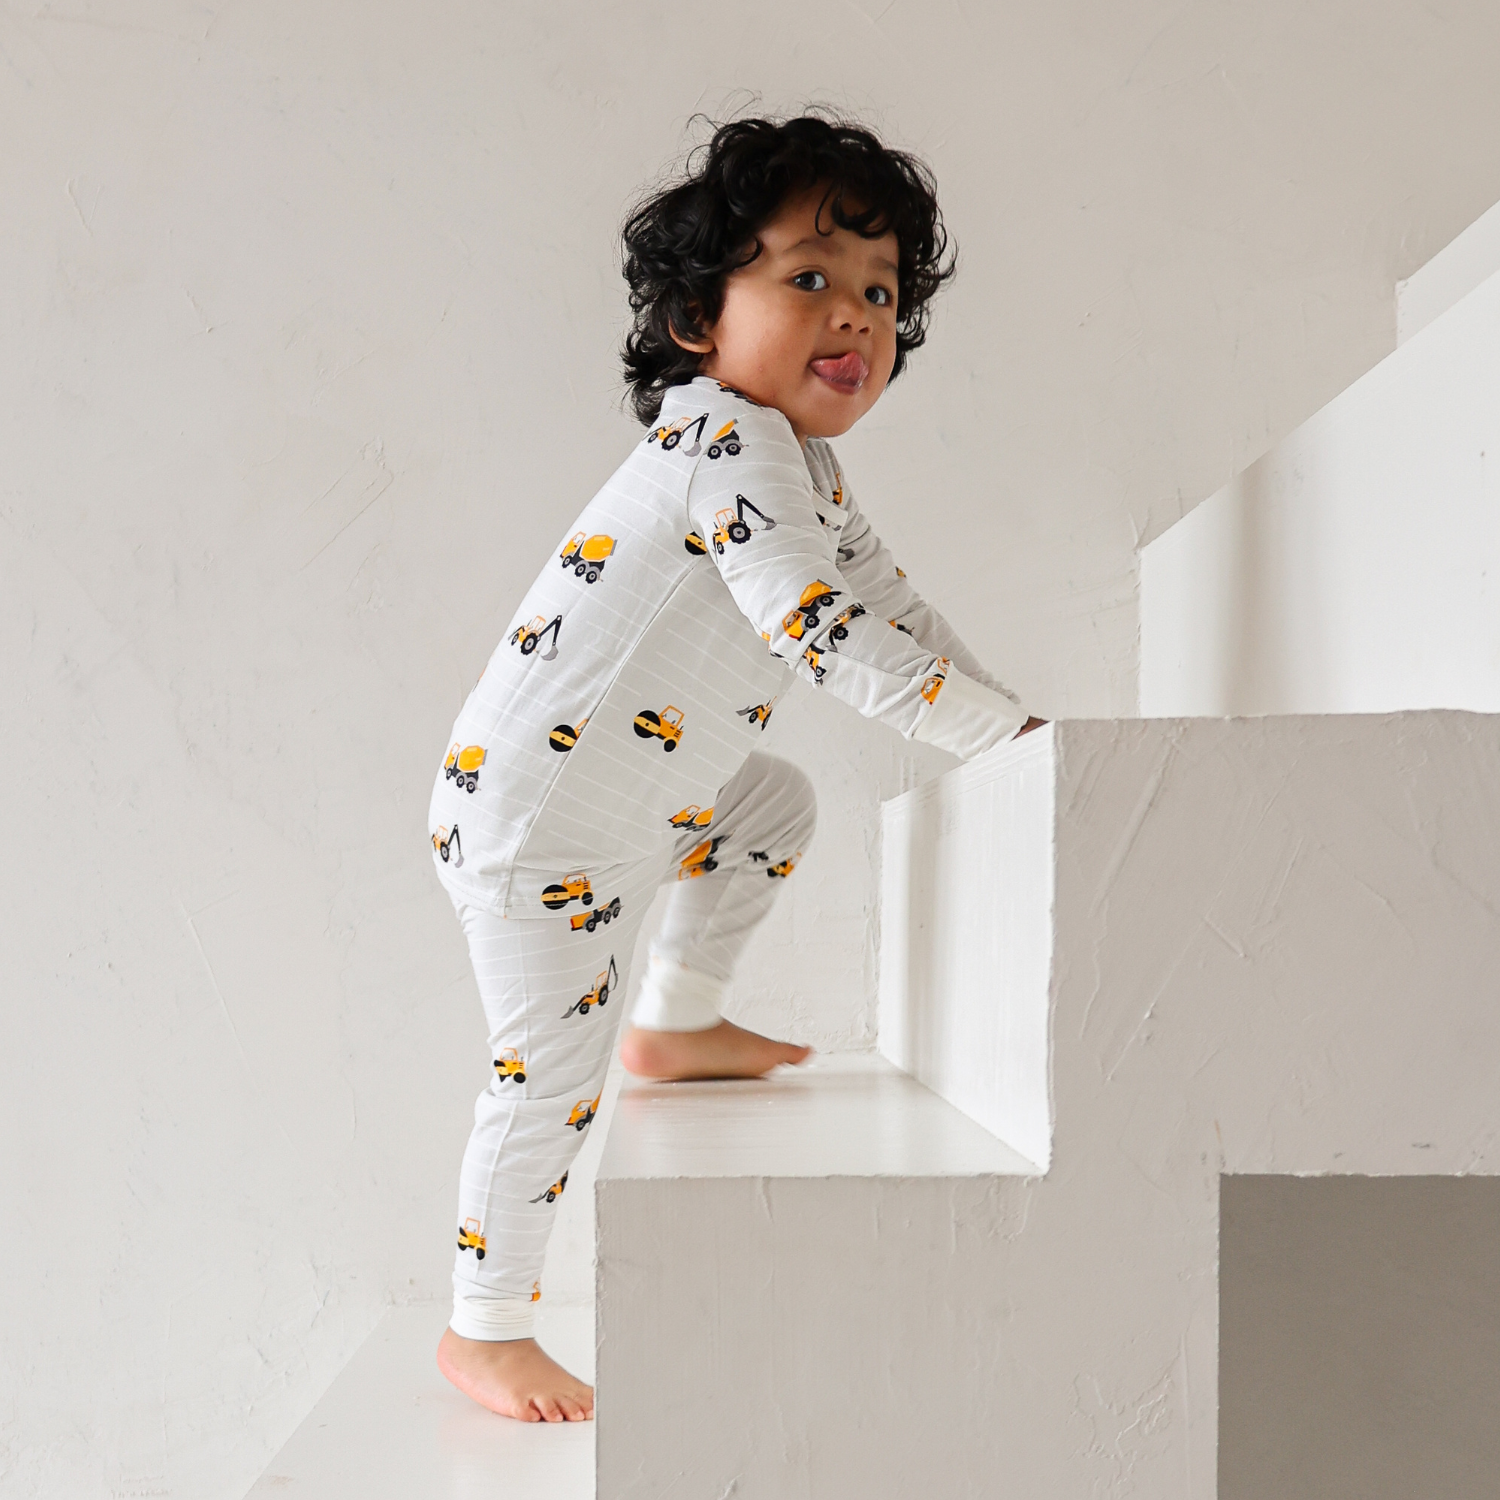 Construção de conjuntos de pijamas para crianças